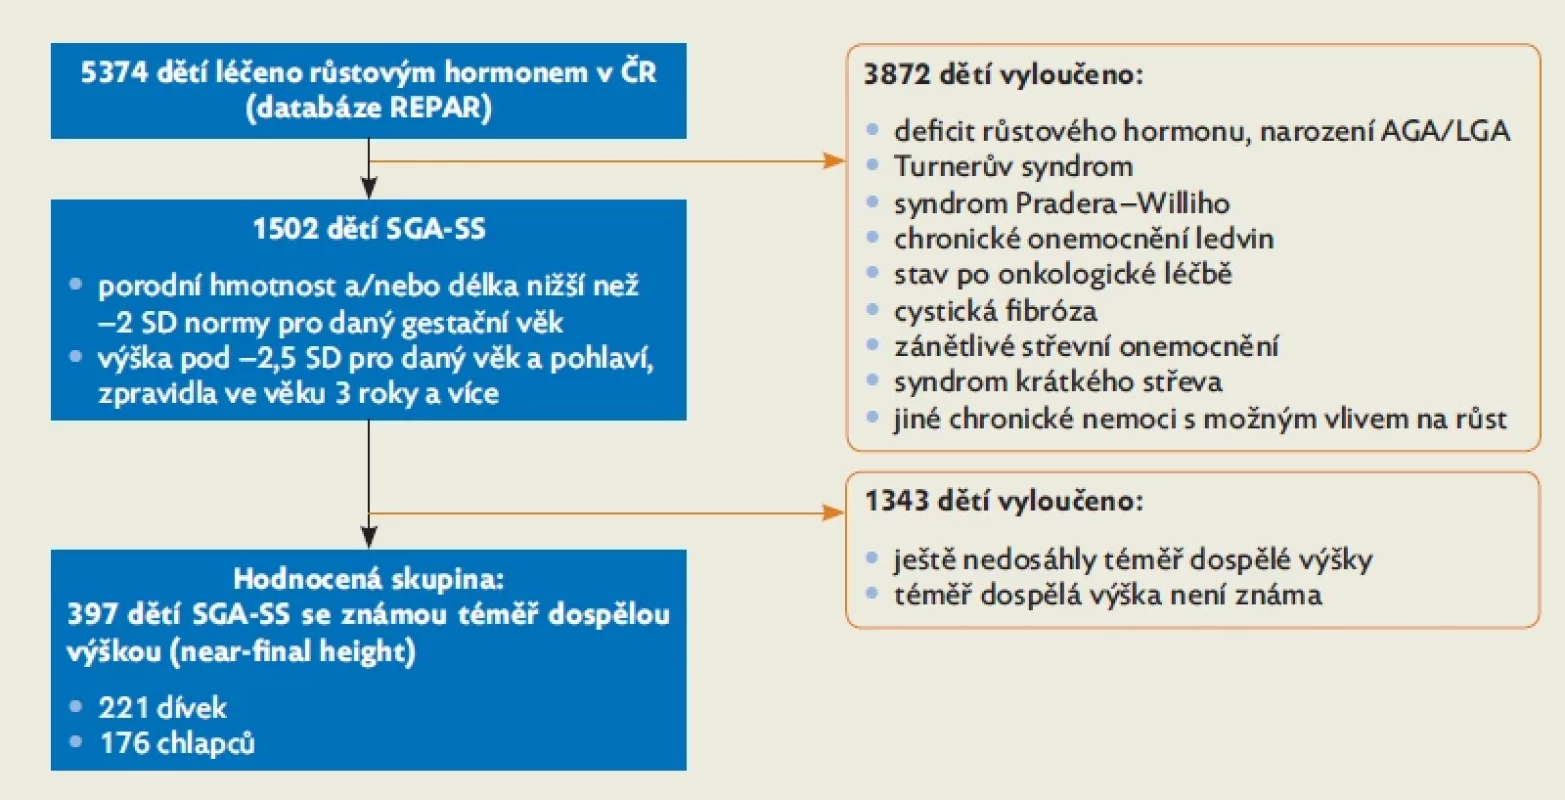 Výběr kohorty k posouzení vlivu léčby na finální dospělou výšku u dětí SGA-SS ze všech dětí léčených růstovým hormonem v ČR podle databáze REPAR .